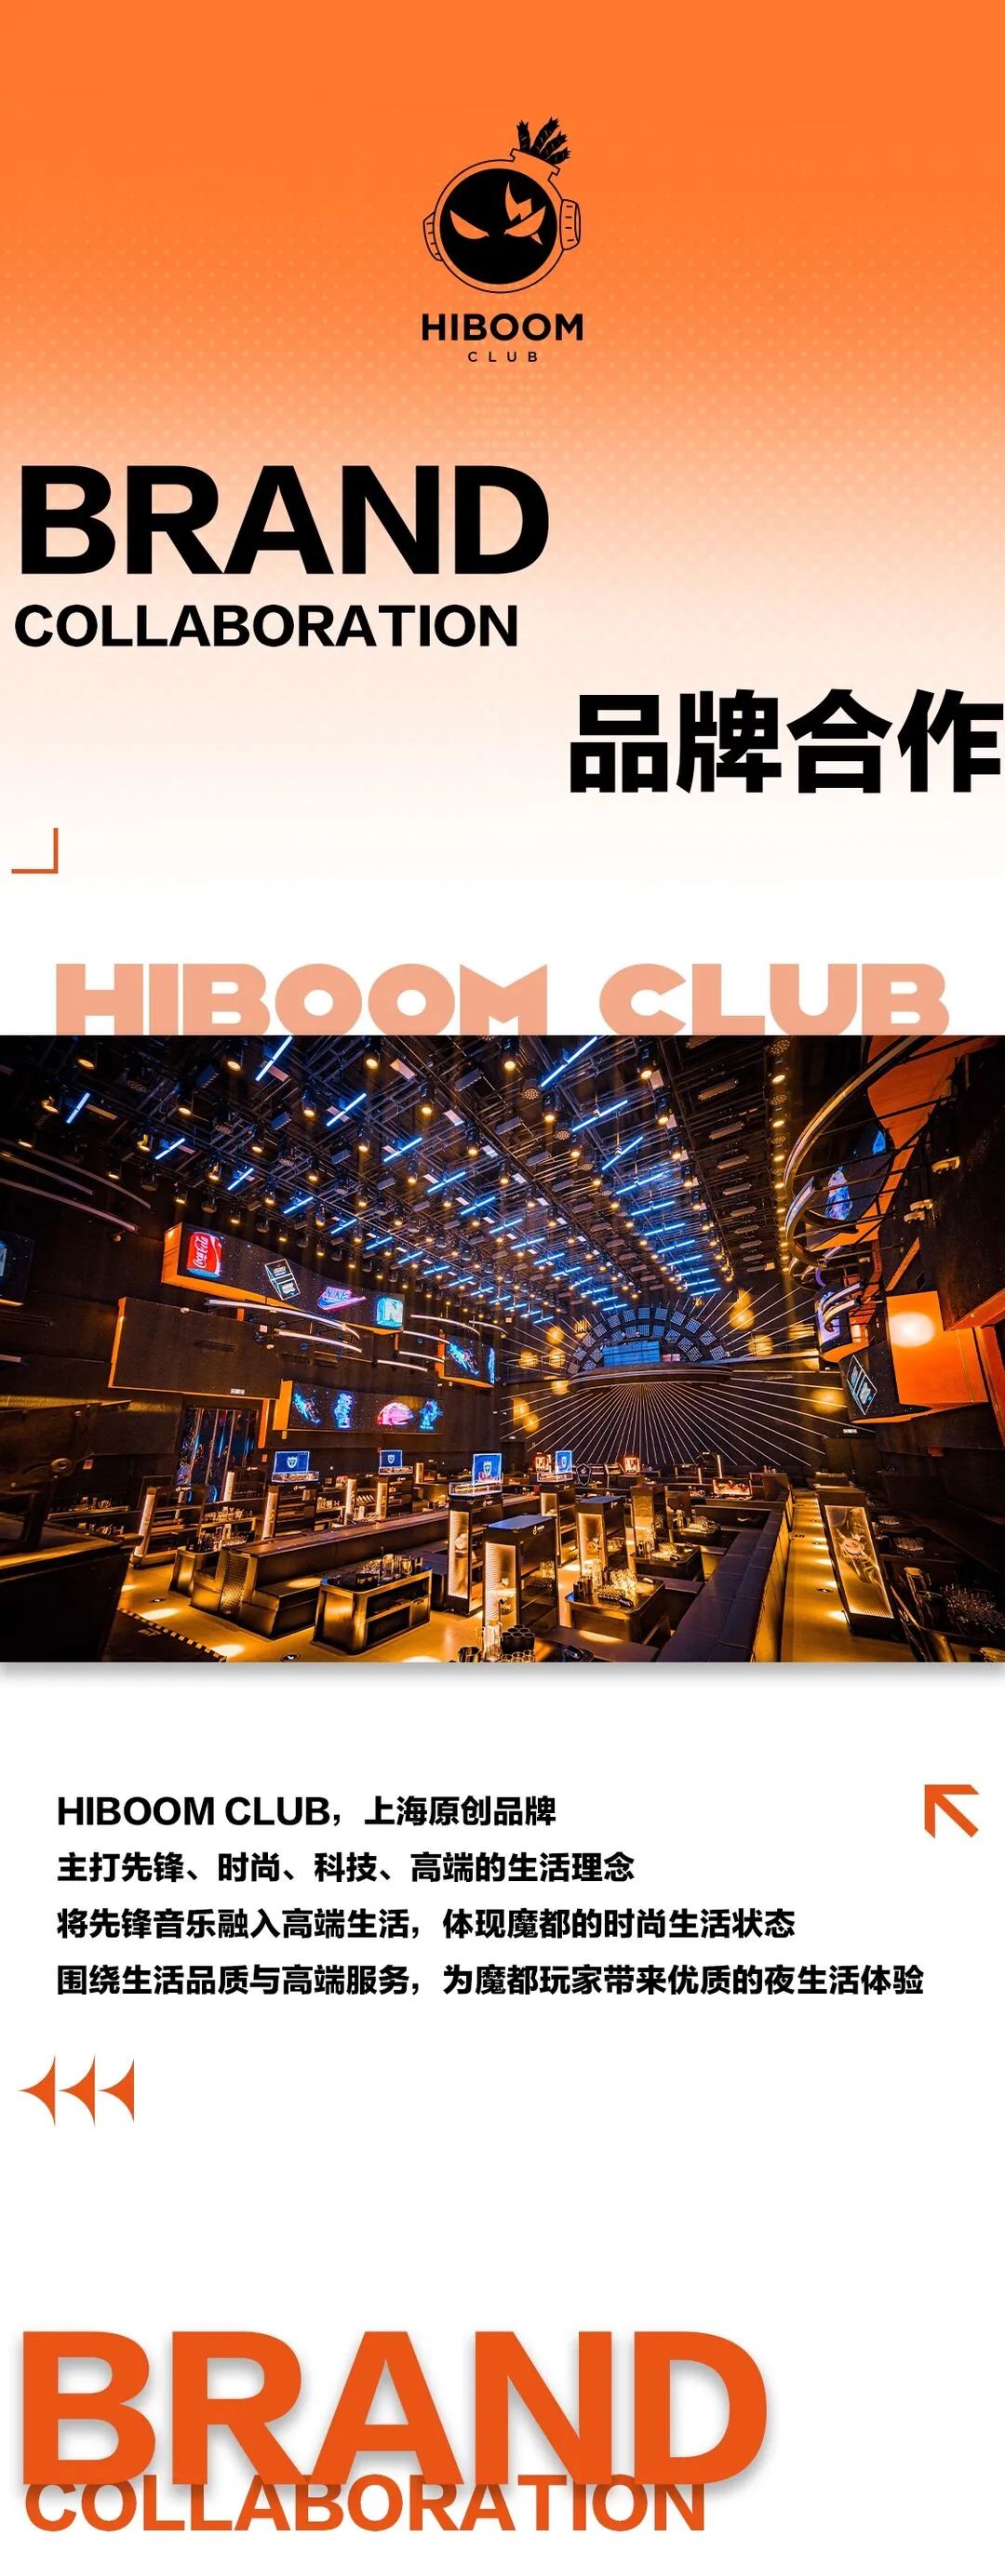 𝐇𝐈𝐁𝐎𝐎𝐌 𝐂𝐋𝐔𝐁 | 品牌合作 & 场地租赁-上海HIBOOM酒吧/HIBOOM CLUB